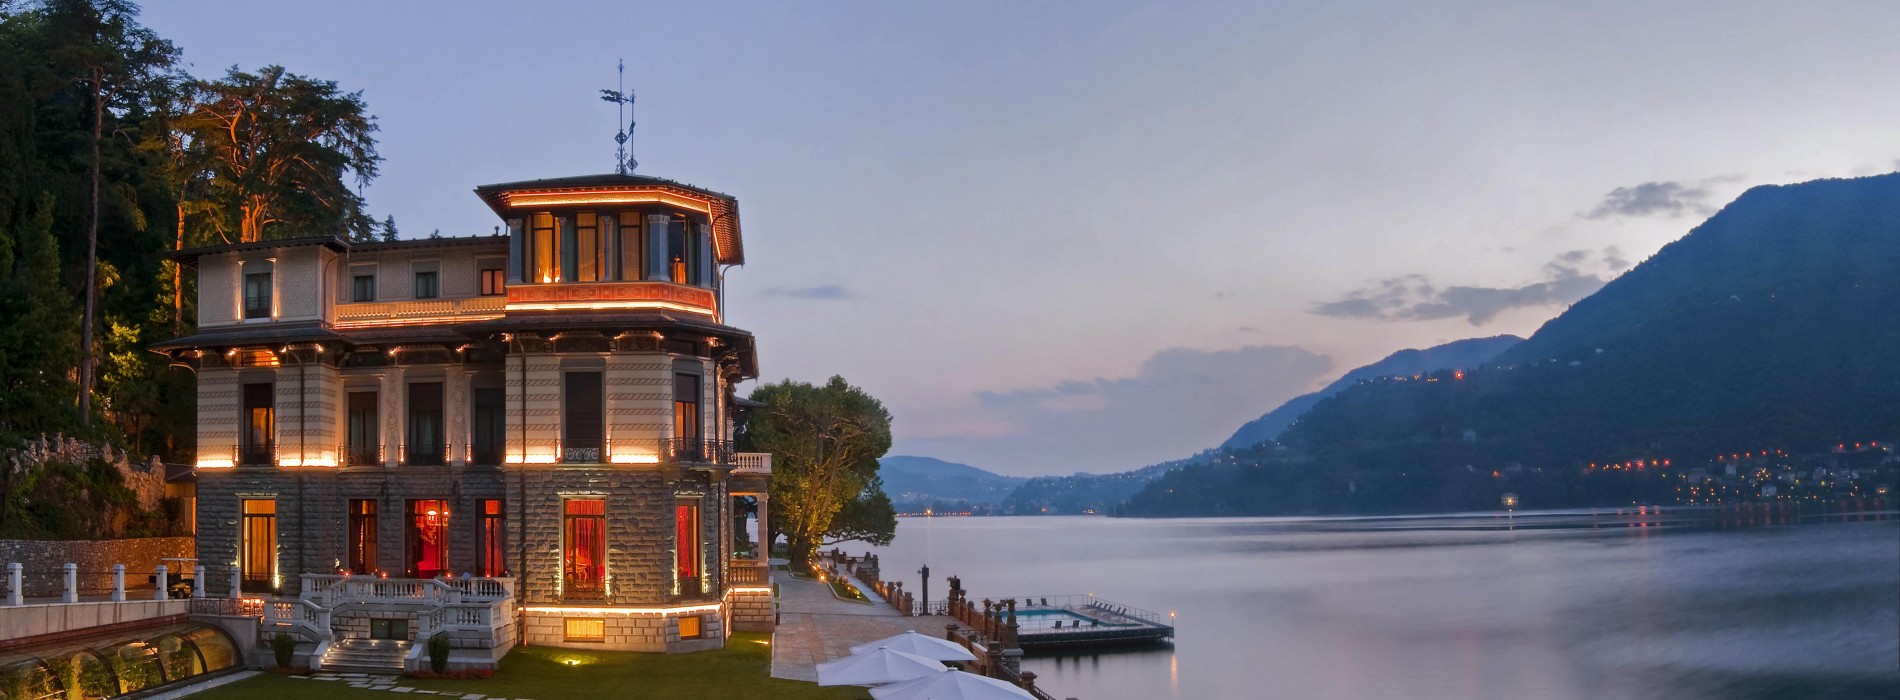 Mandarin Oriental to manage luxury resort on Lake Como